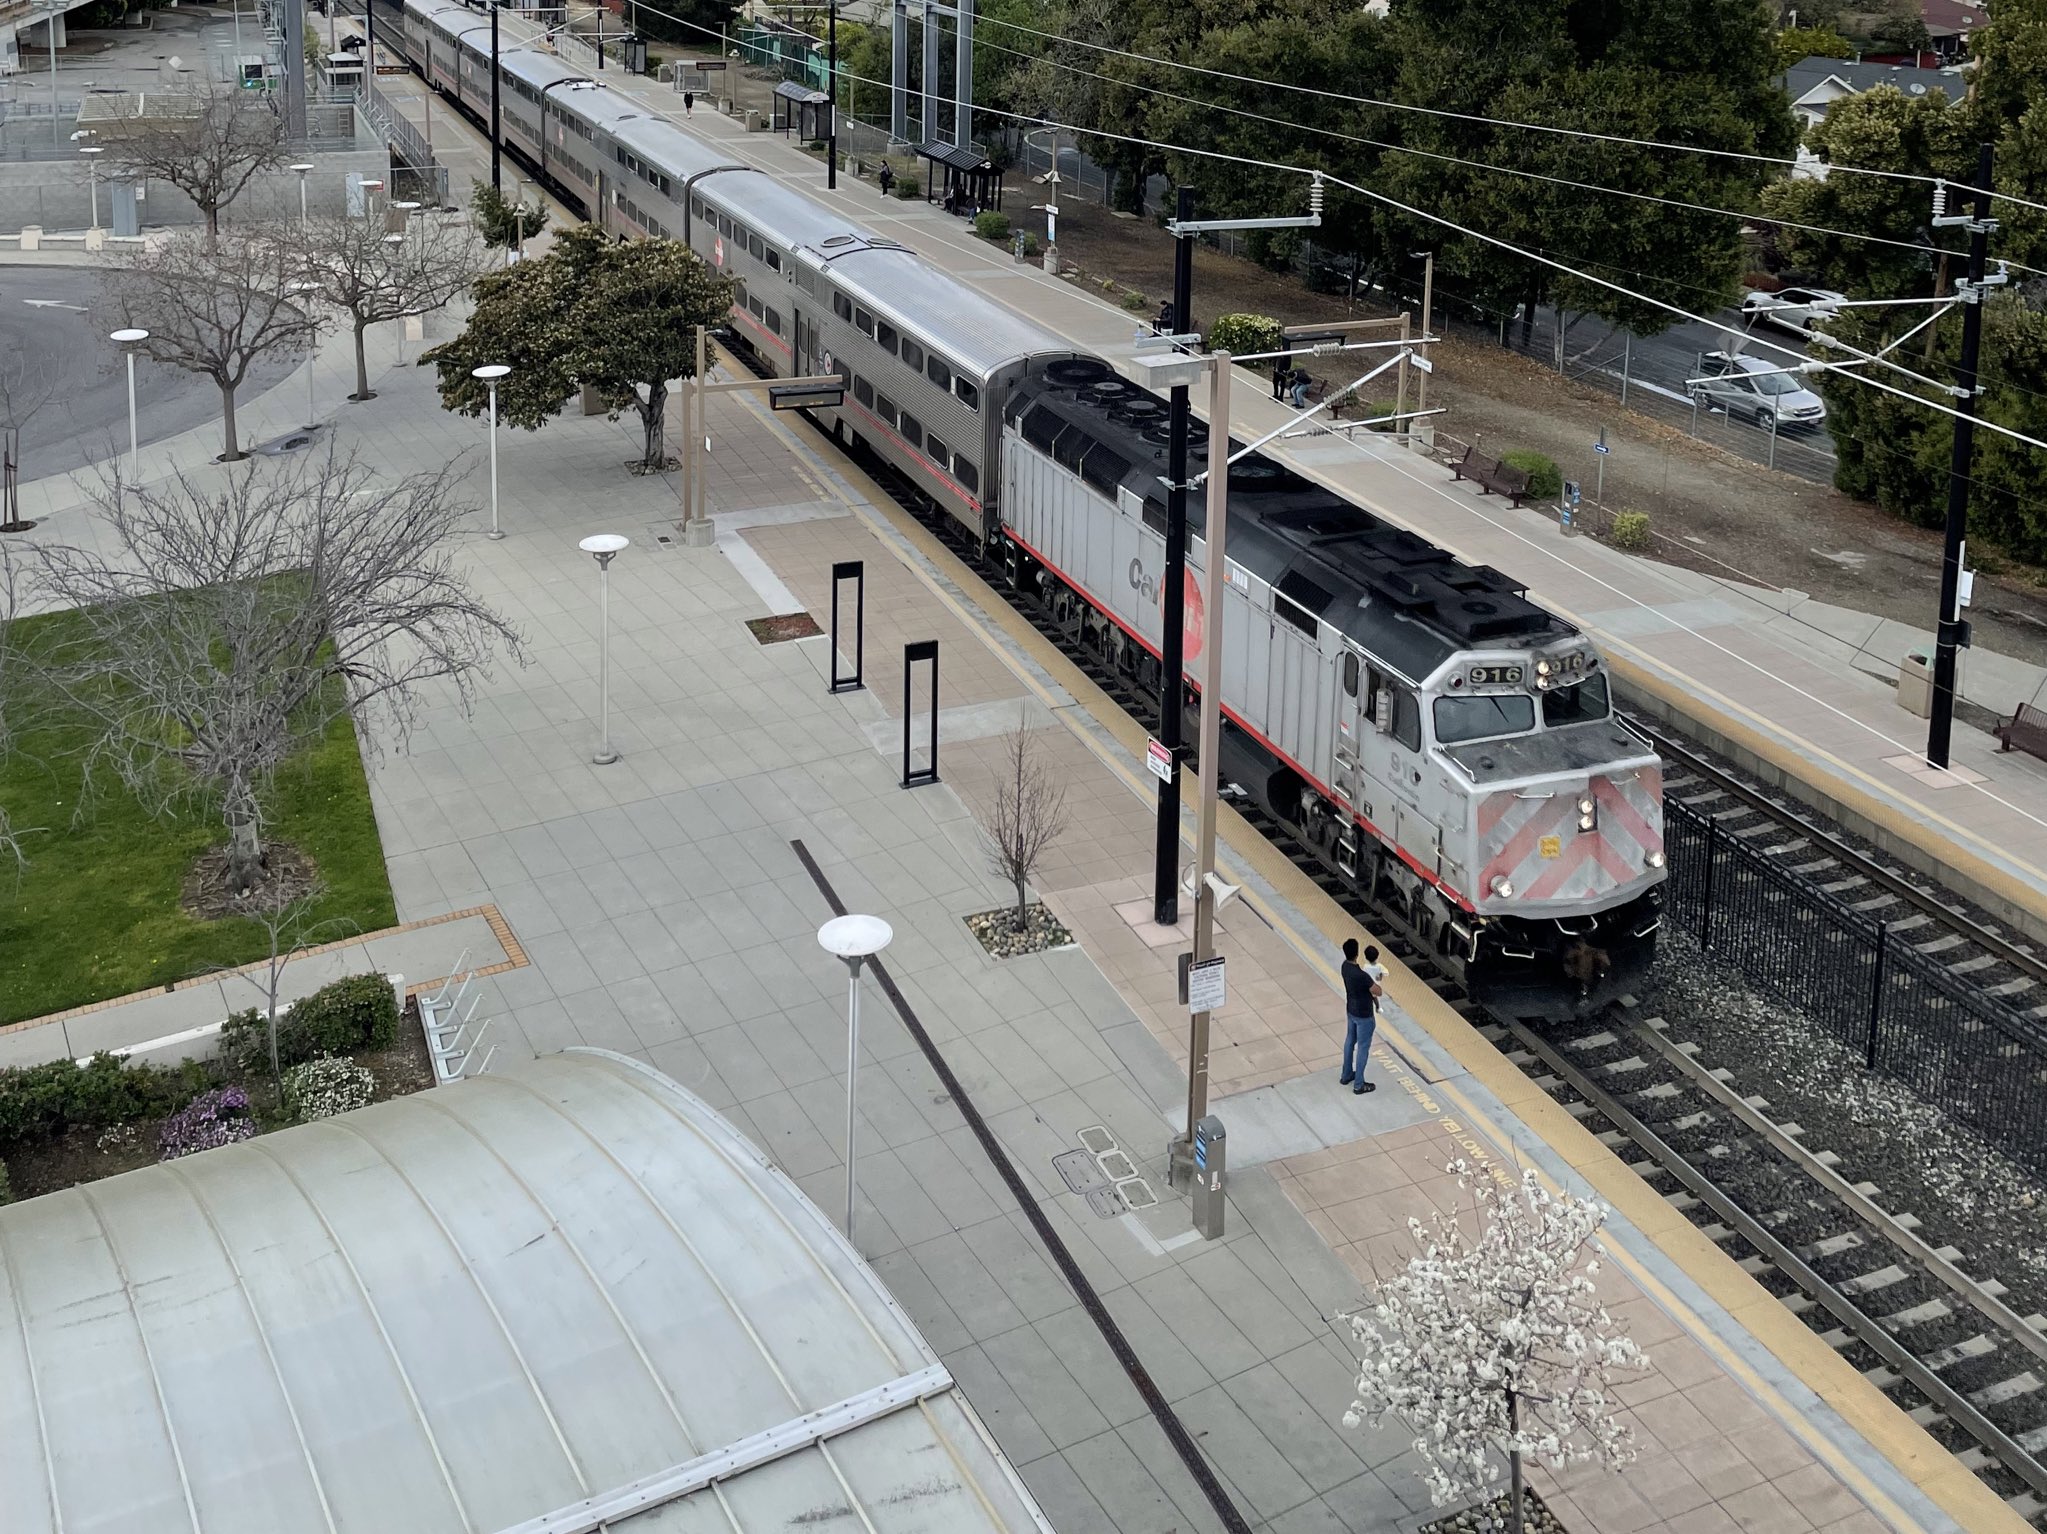 A 40-year-old Caltrain diesel train